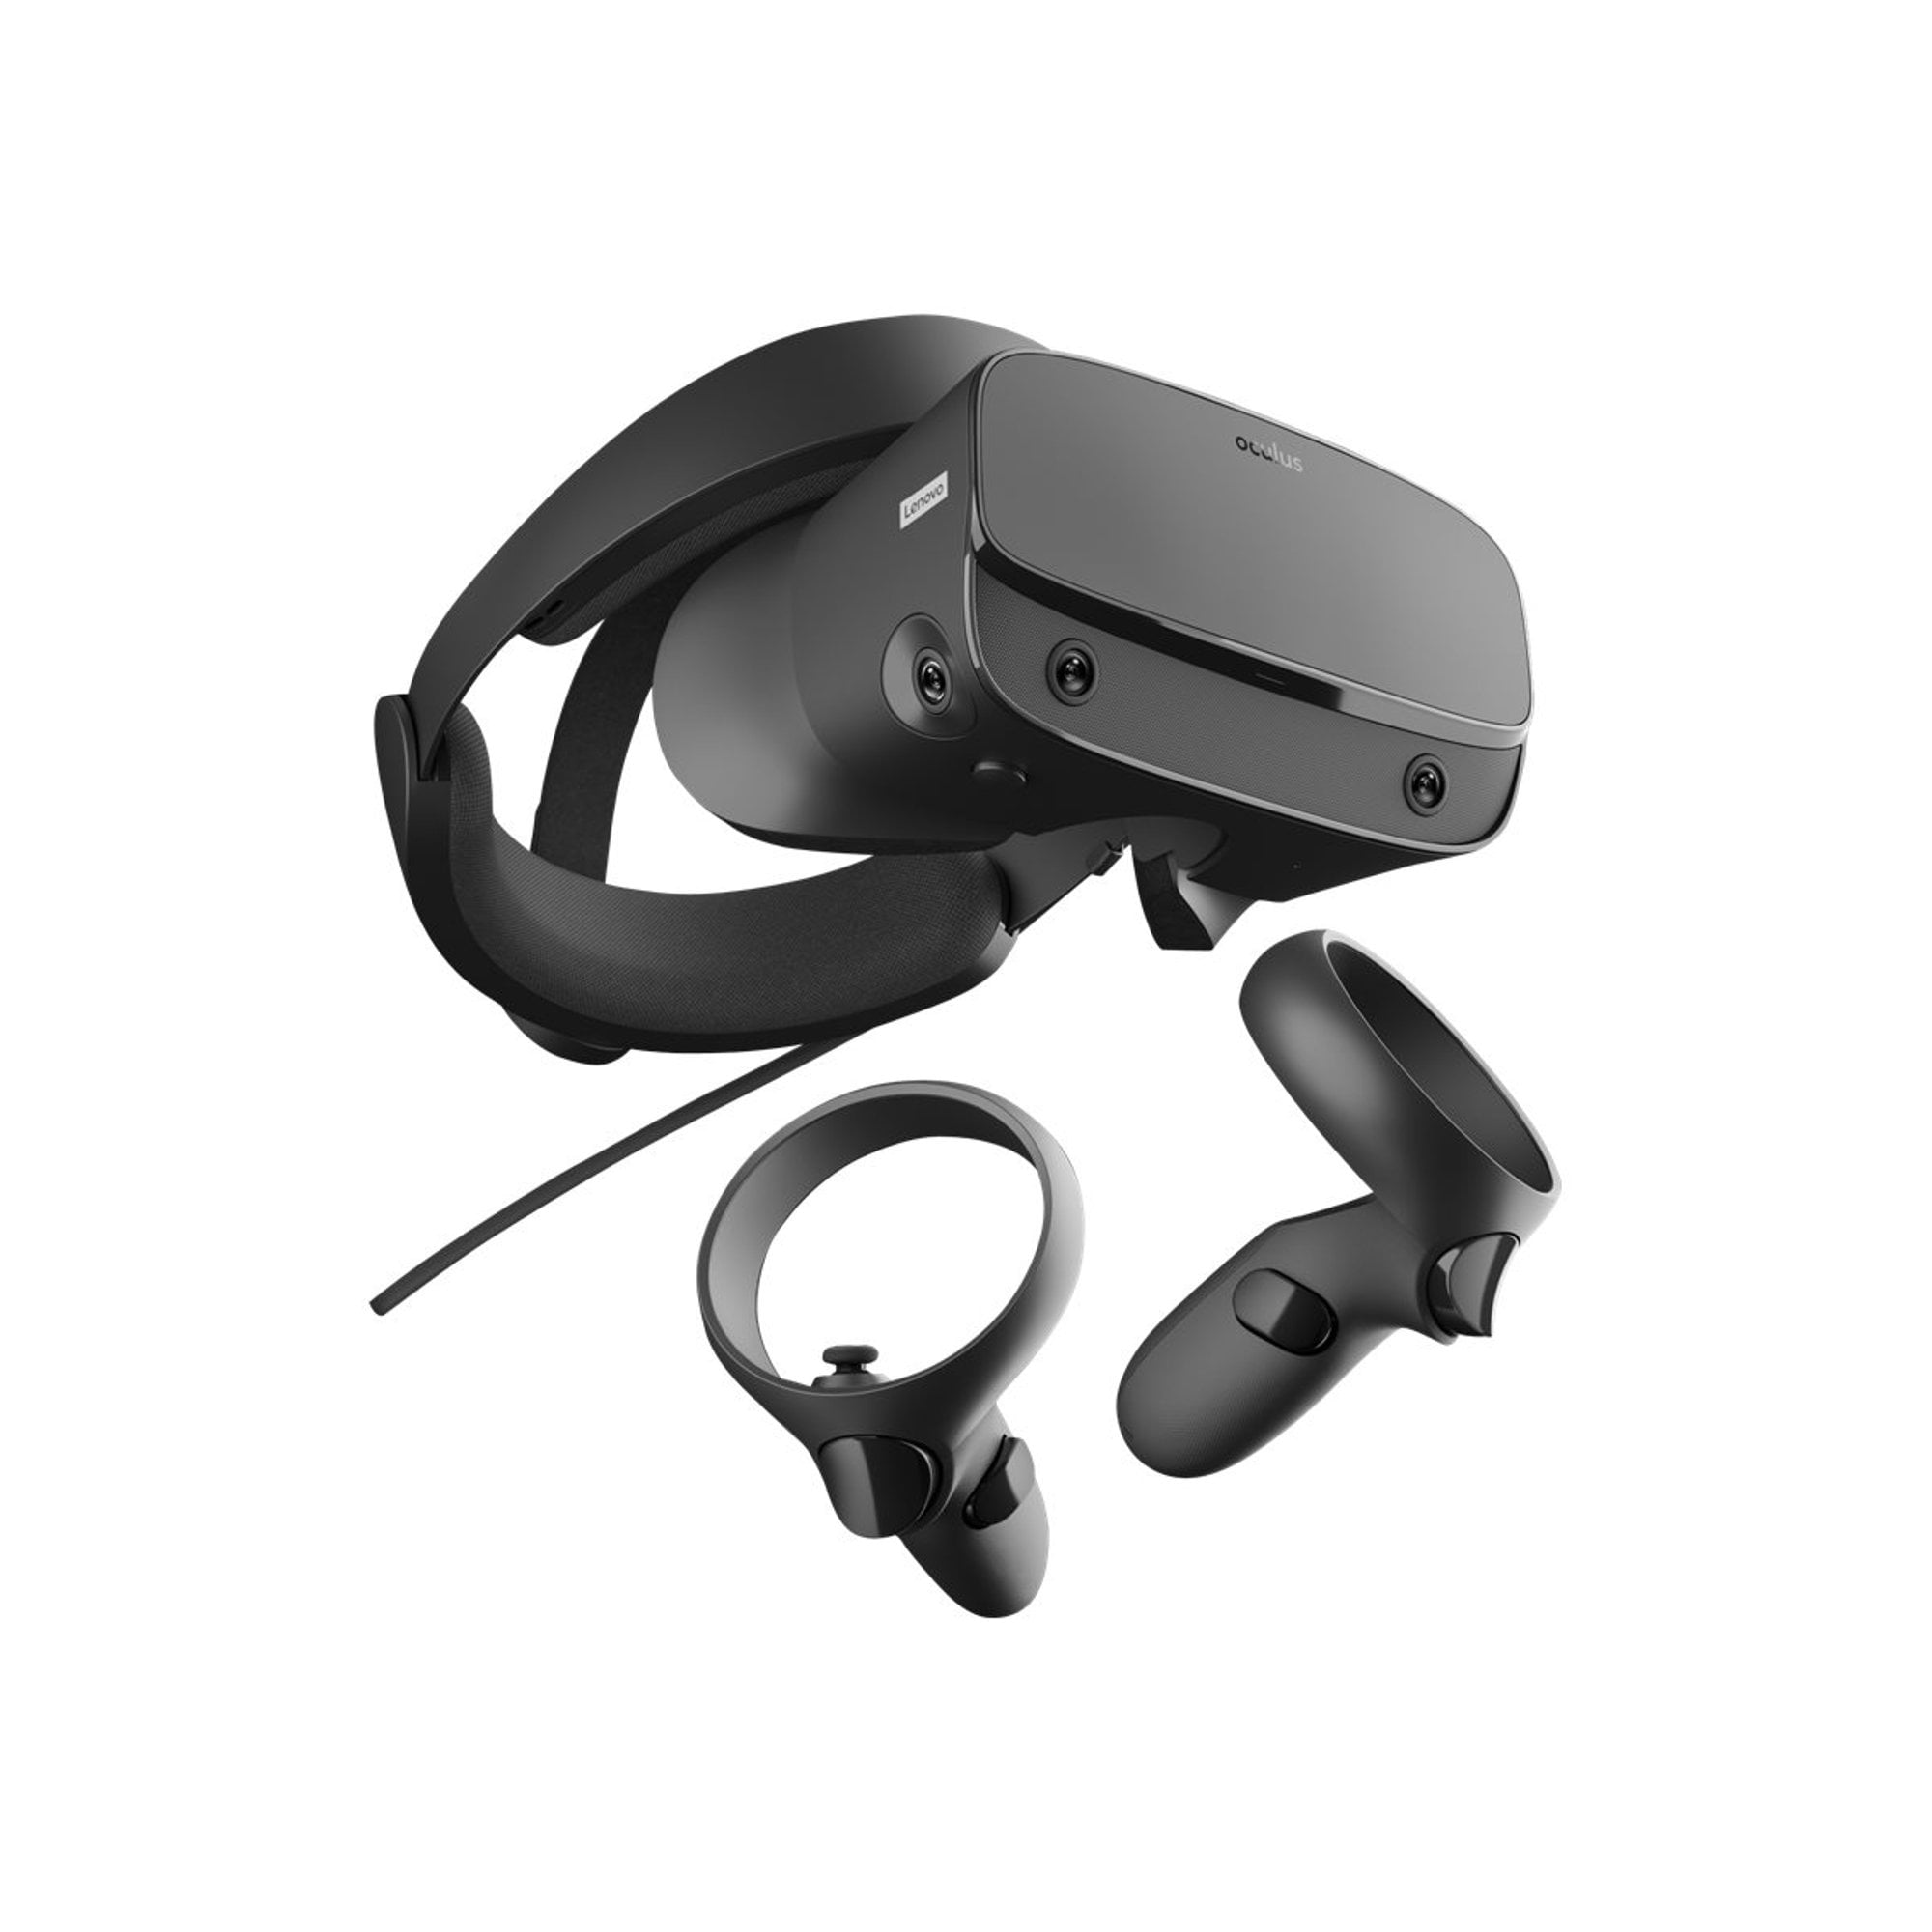 Vr очки oculus 3. VR очки Oculus. ВР очки Окулус рифт. Шлем виртуальной реальности Oculus. Шлем Oculus Rift.